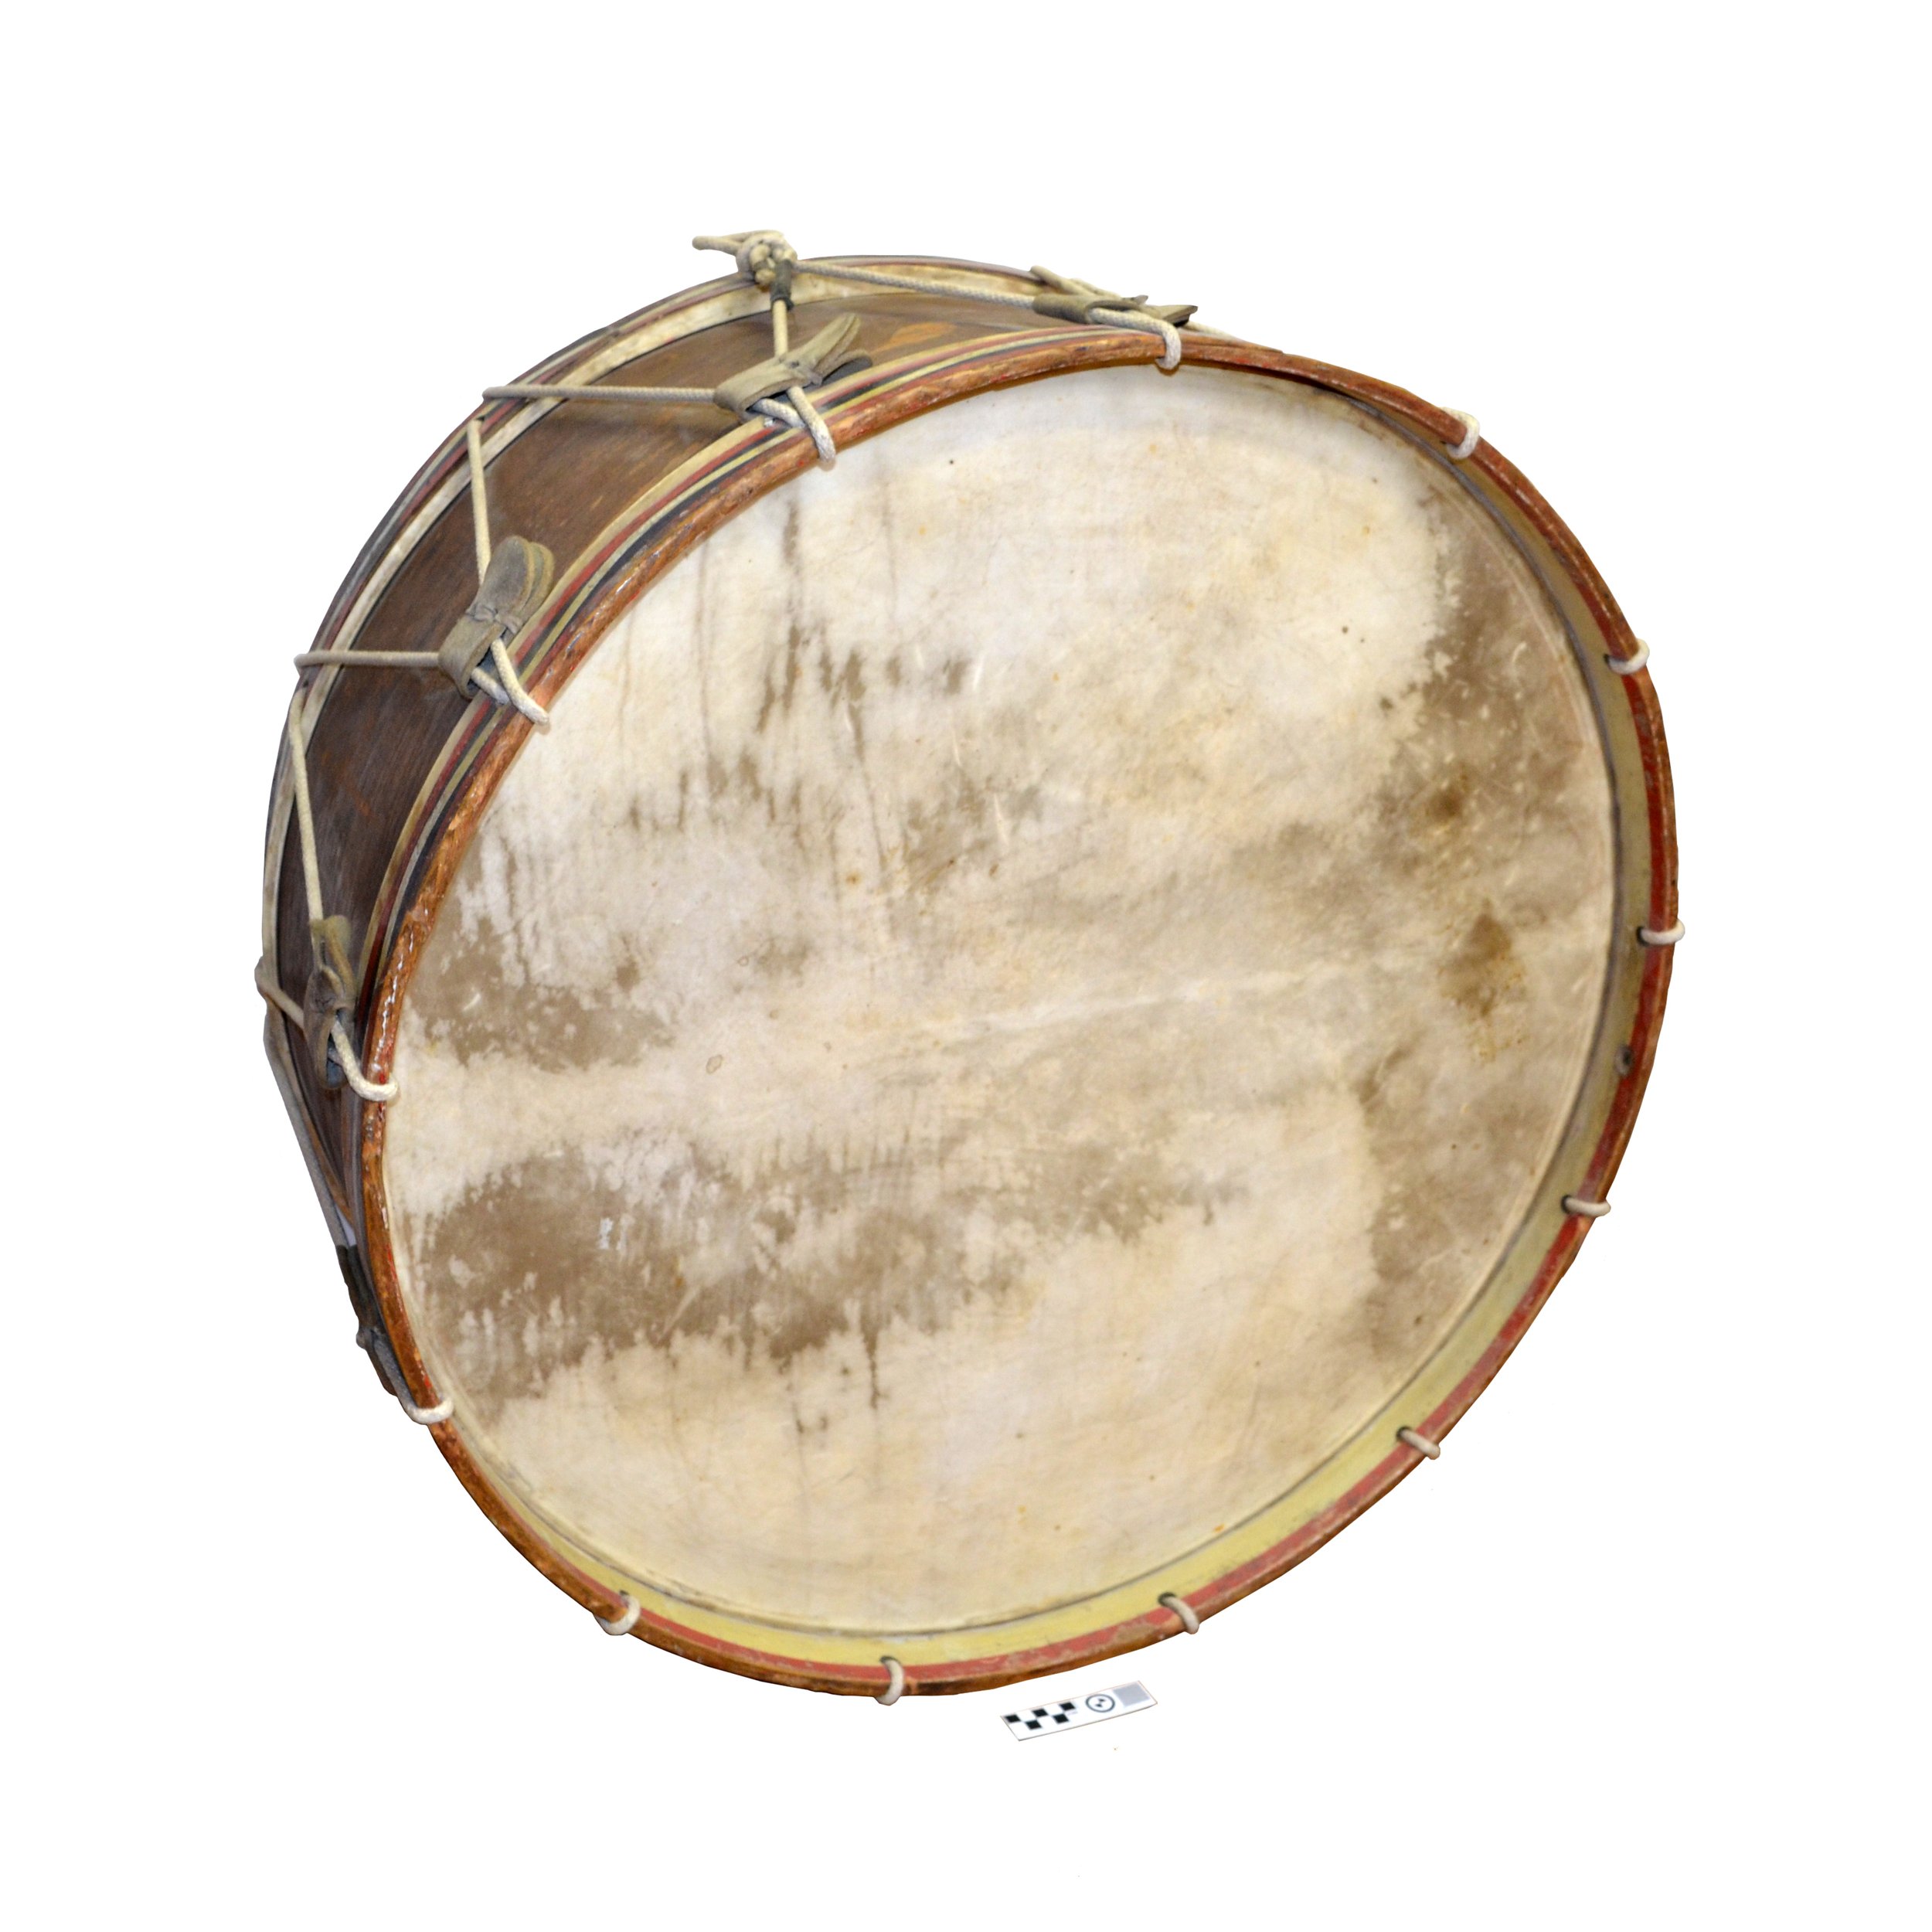 Bass Drum from Summerland’s First Town Band, c. 1904 / Grosse caisse de la première fanfare municipale de Summerland, vers 1904, (SMAS#1971-012-001)